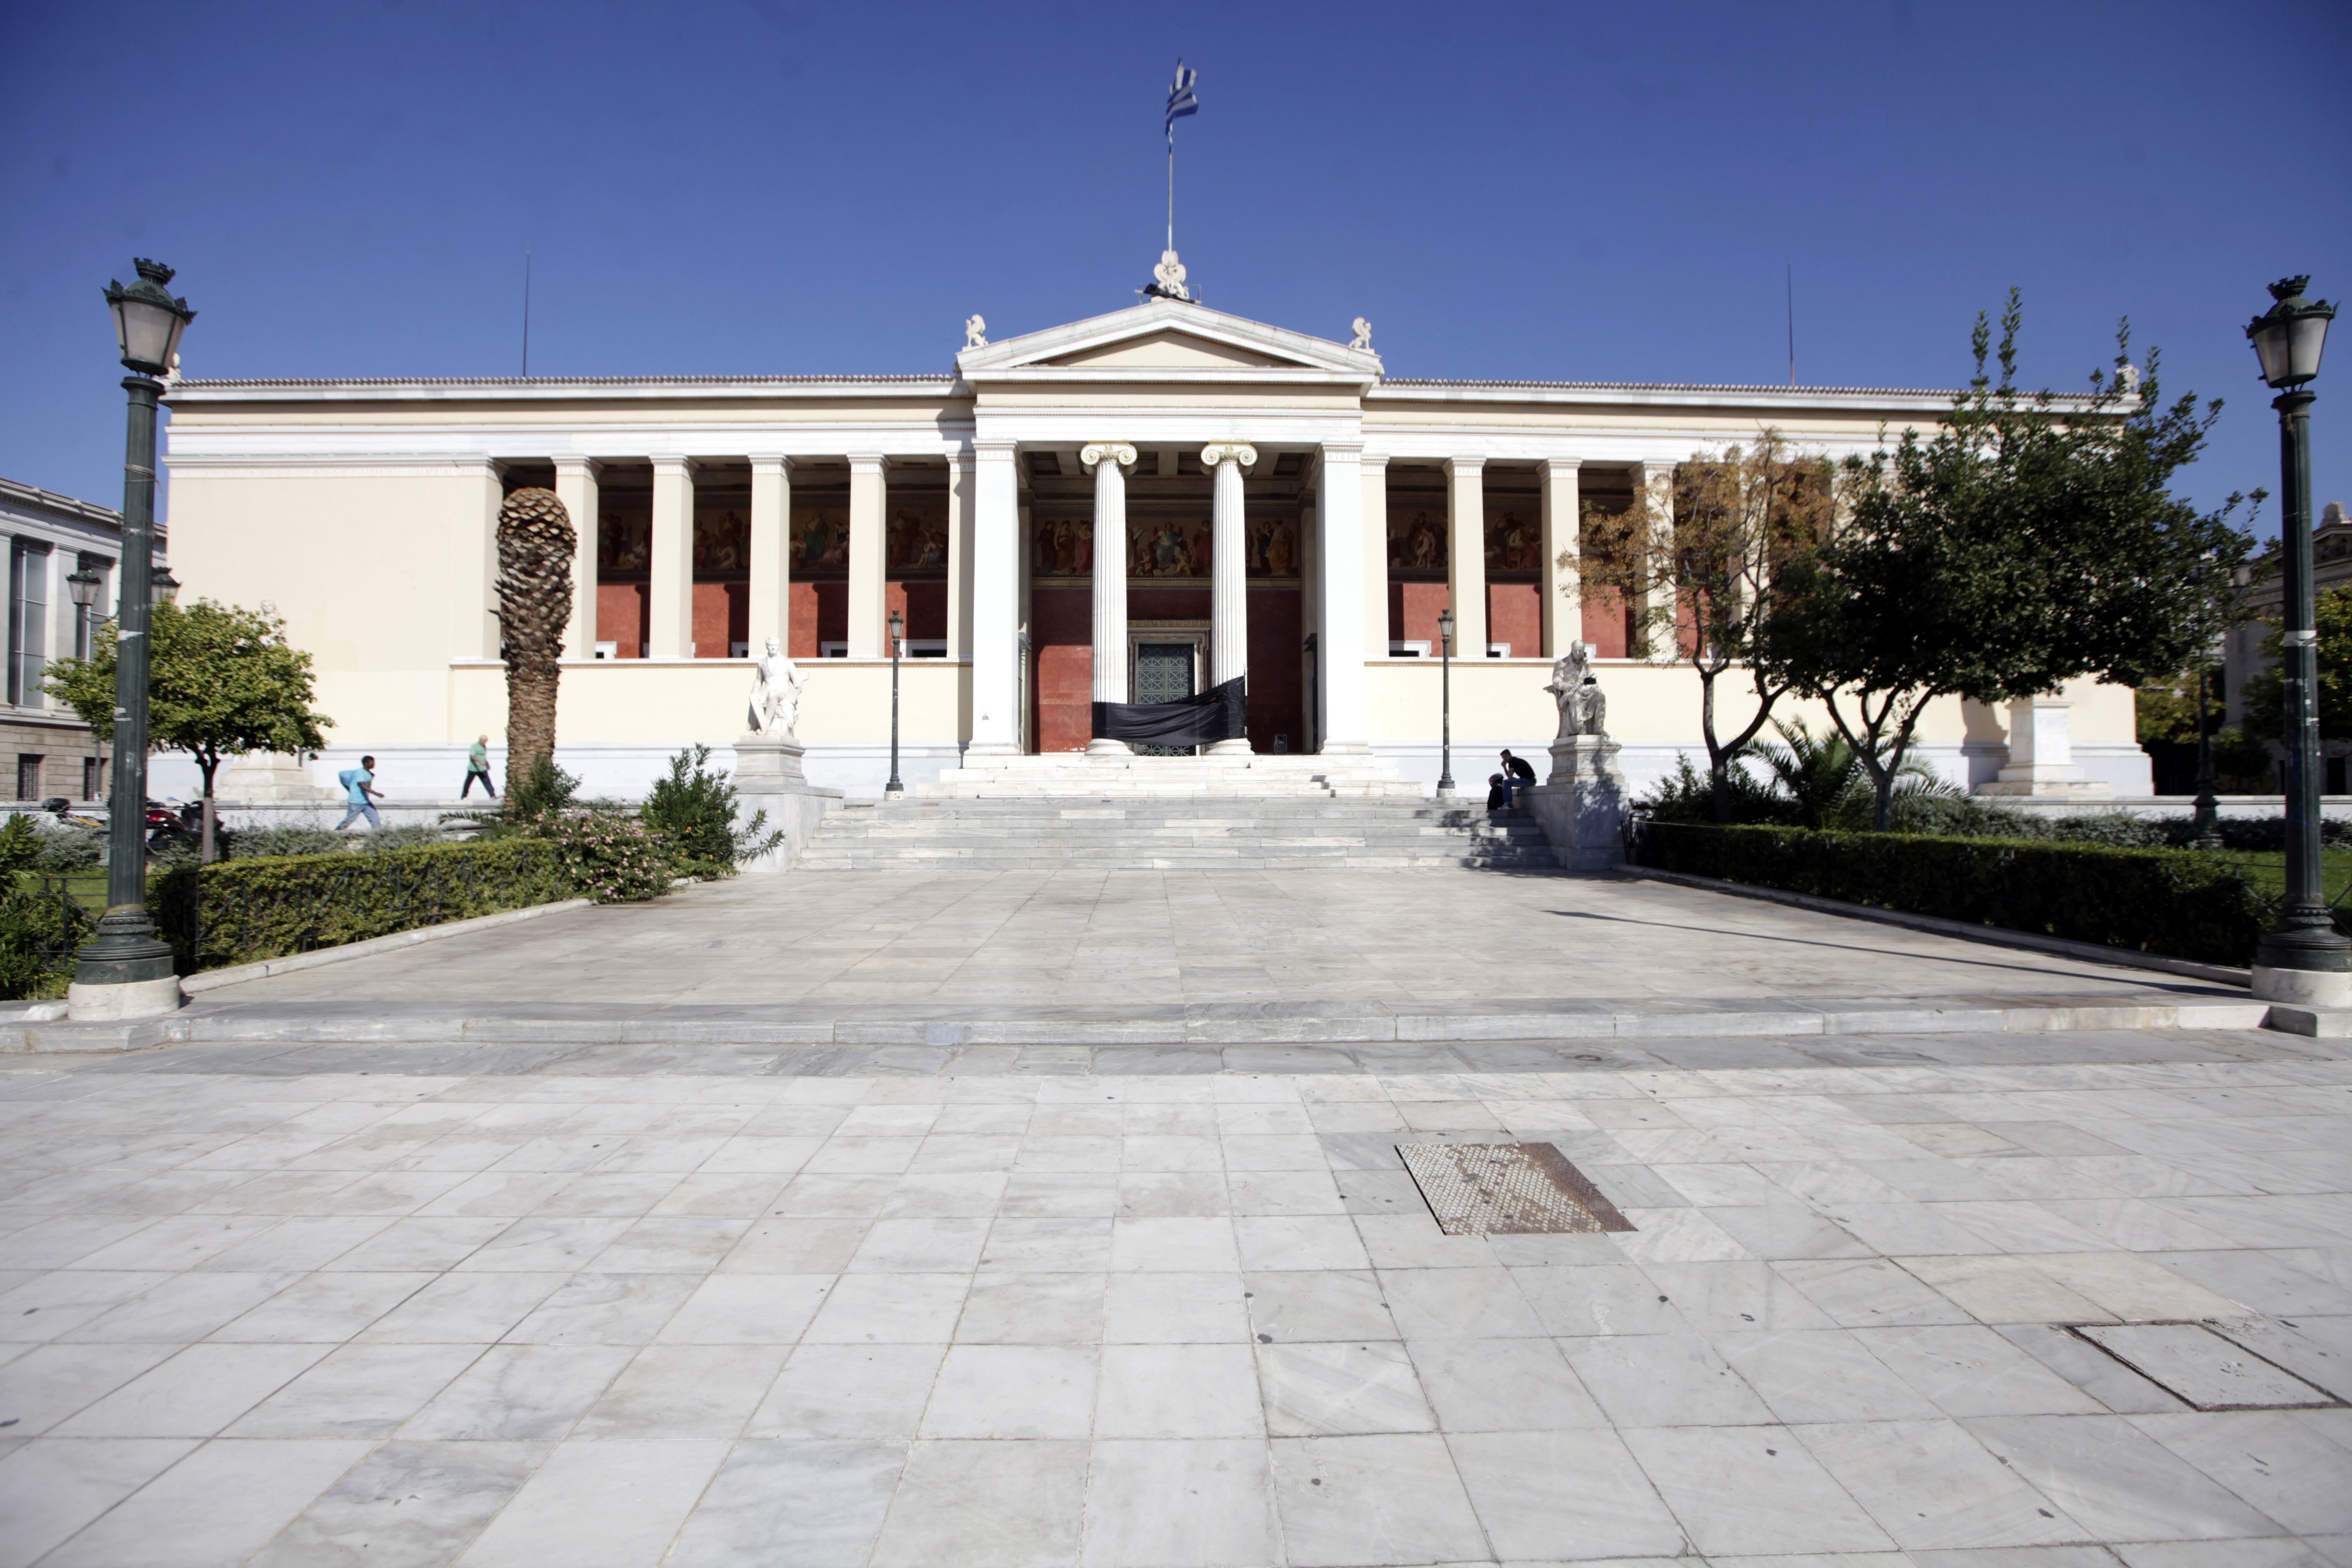 Αρχίζουν τα μαθήματα στο Πανεπιστήμιο Αθηνών – Συνεχίζεται η κατάληψη στο Μετσόβιο